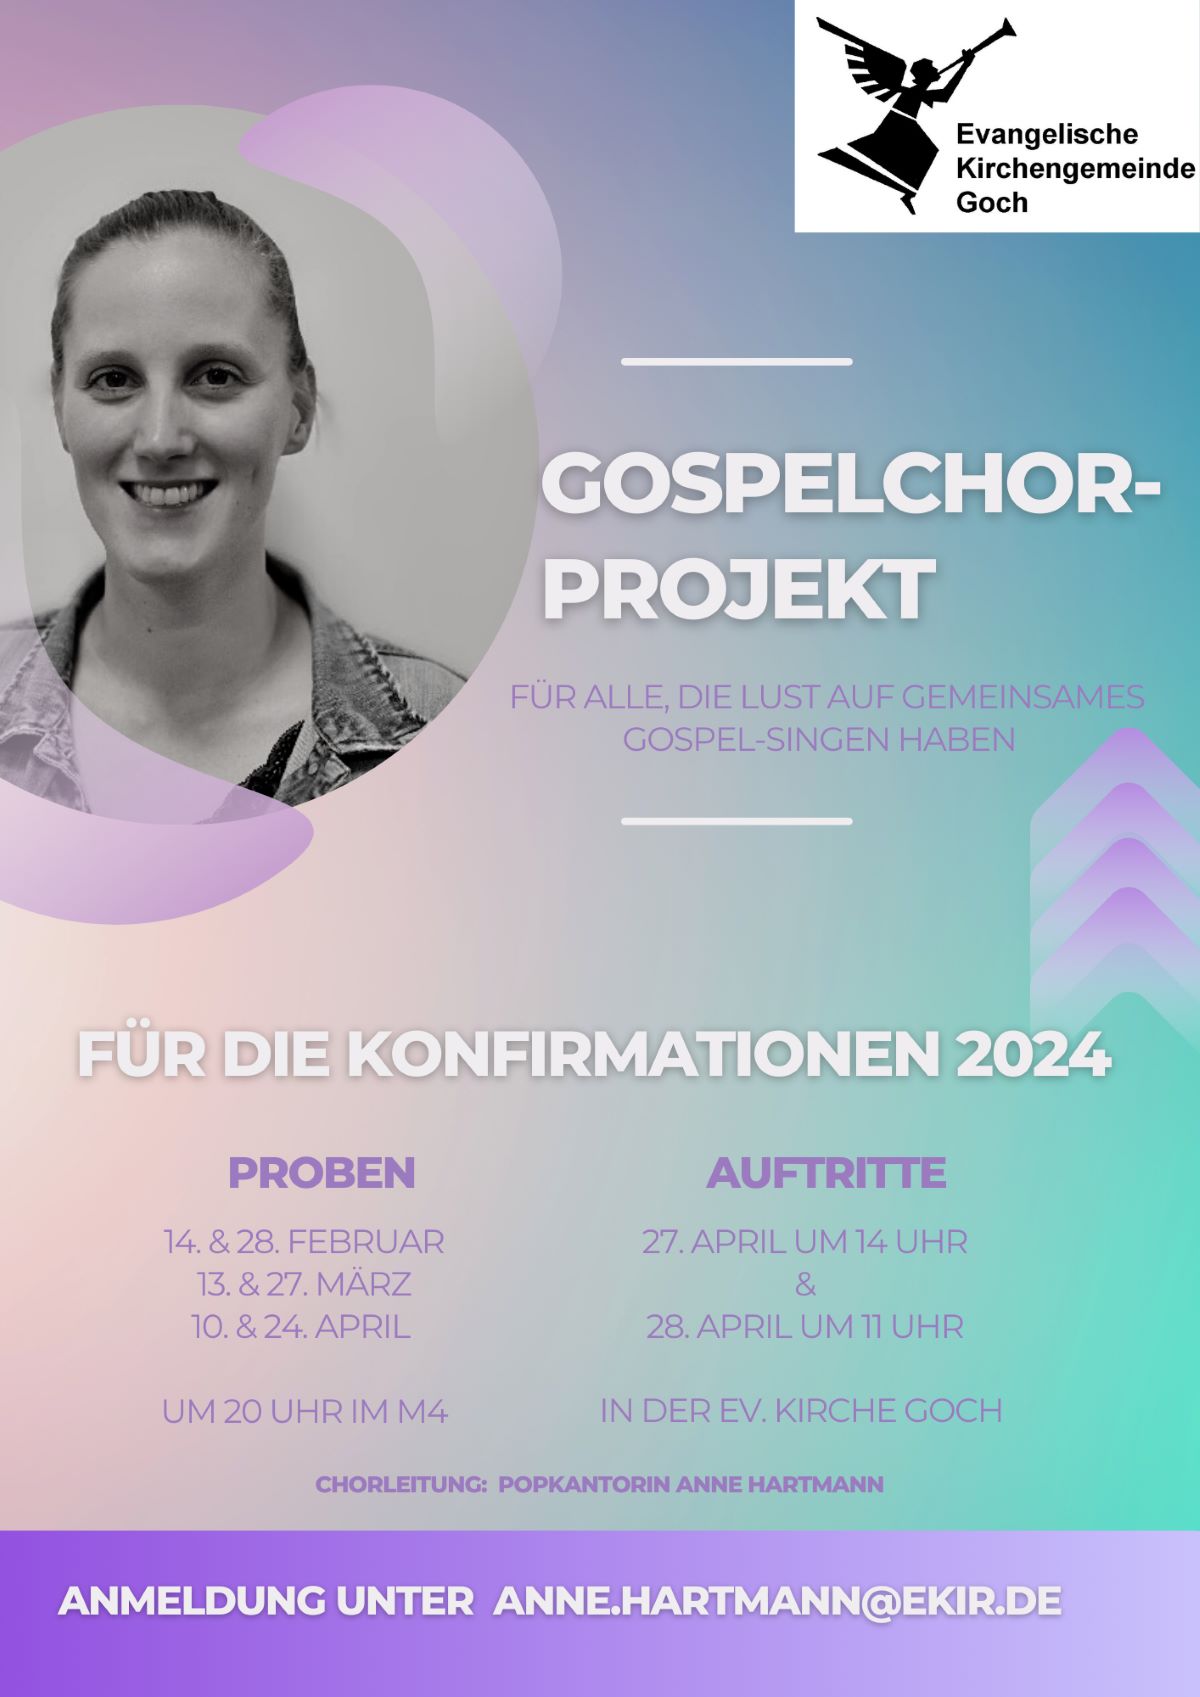 Gospelchorprojekt 2024 s